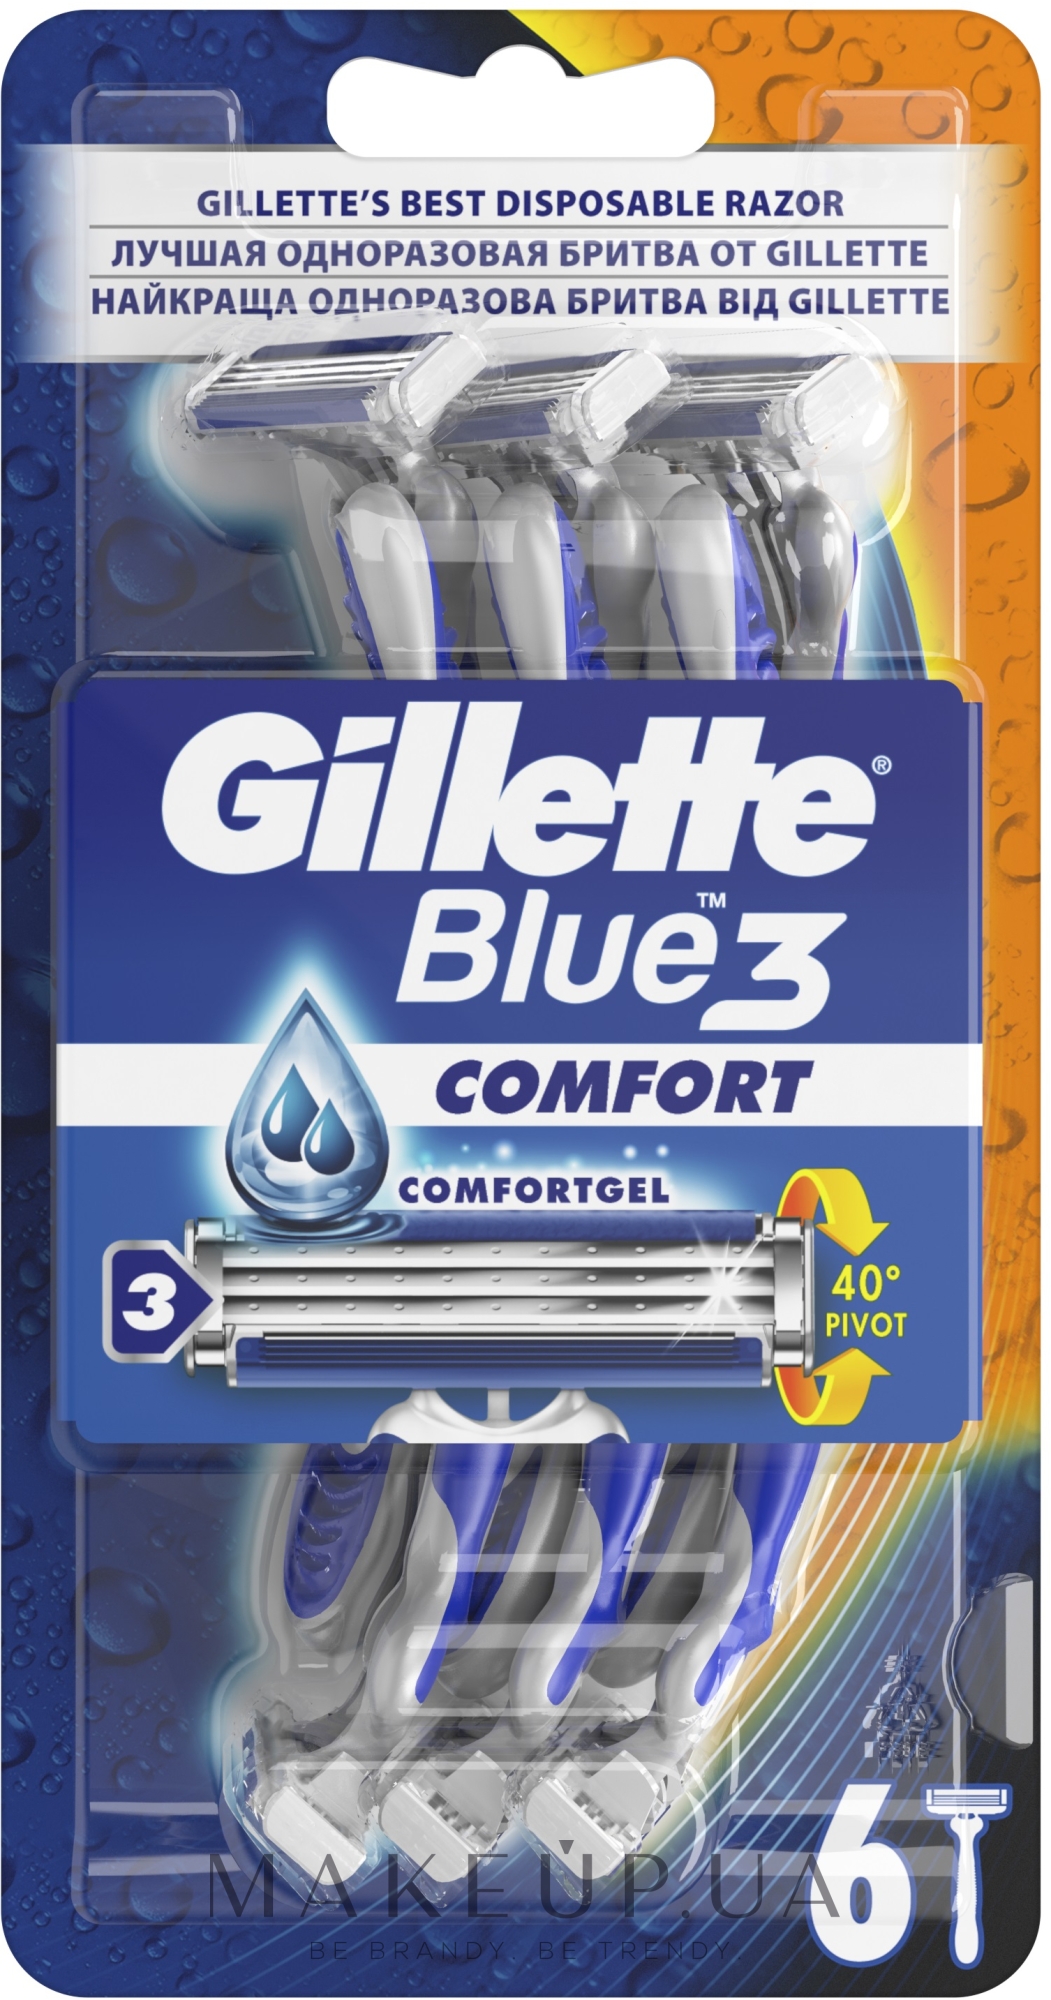 Набор одноразовых станков для бритья, 6 шт - Gillette Blue 3 Comfort — фото 6шт